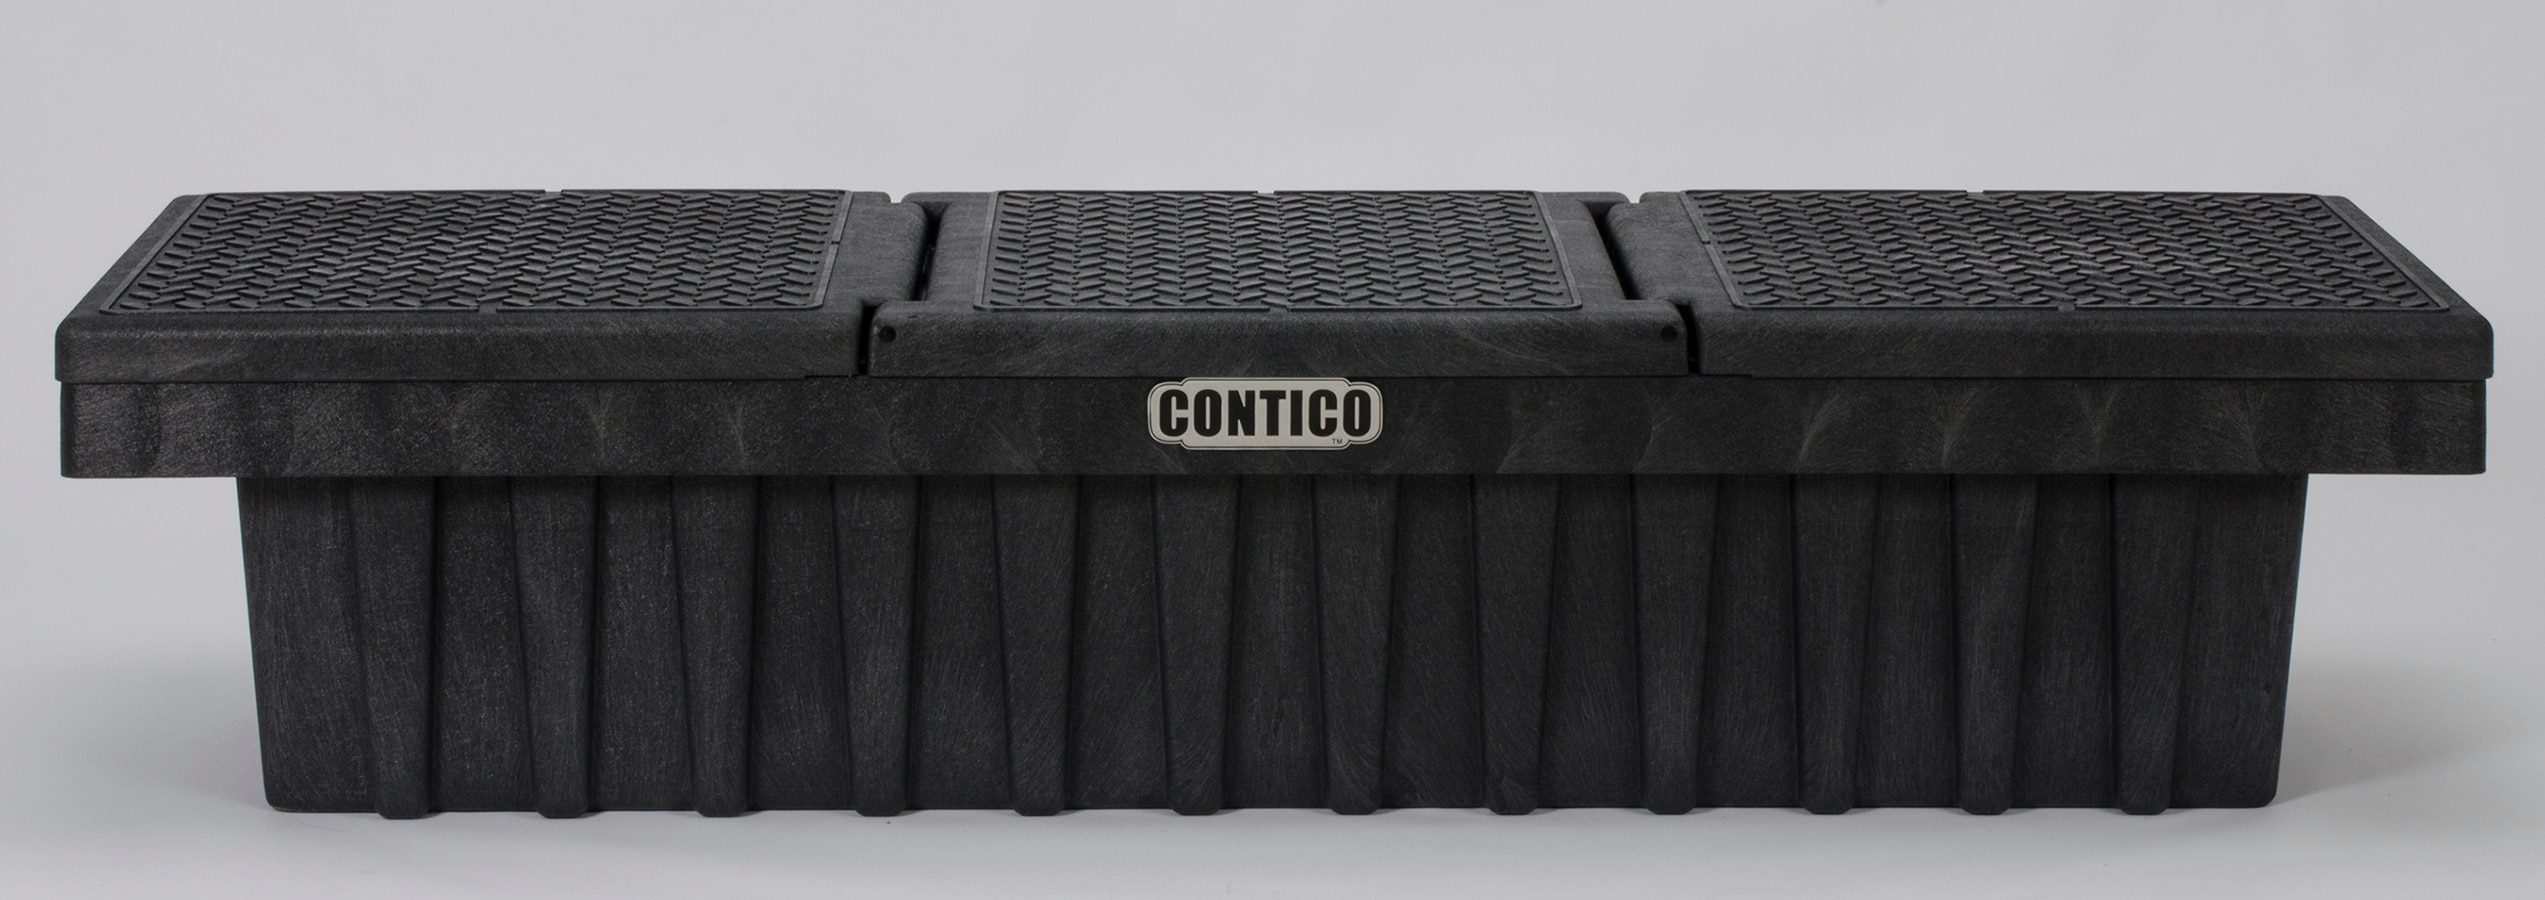 CONTICO 71.25-in x 21.5-in x 16.25-in Black Plastic Truck Tool Box